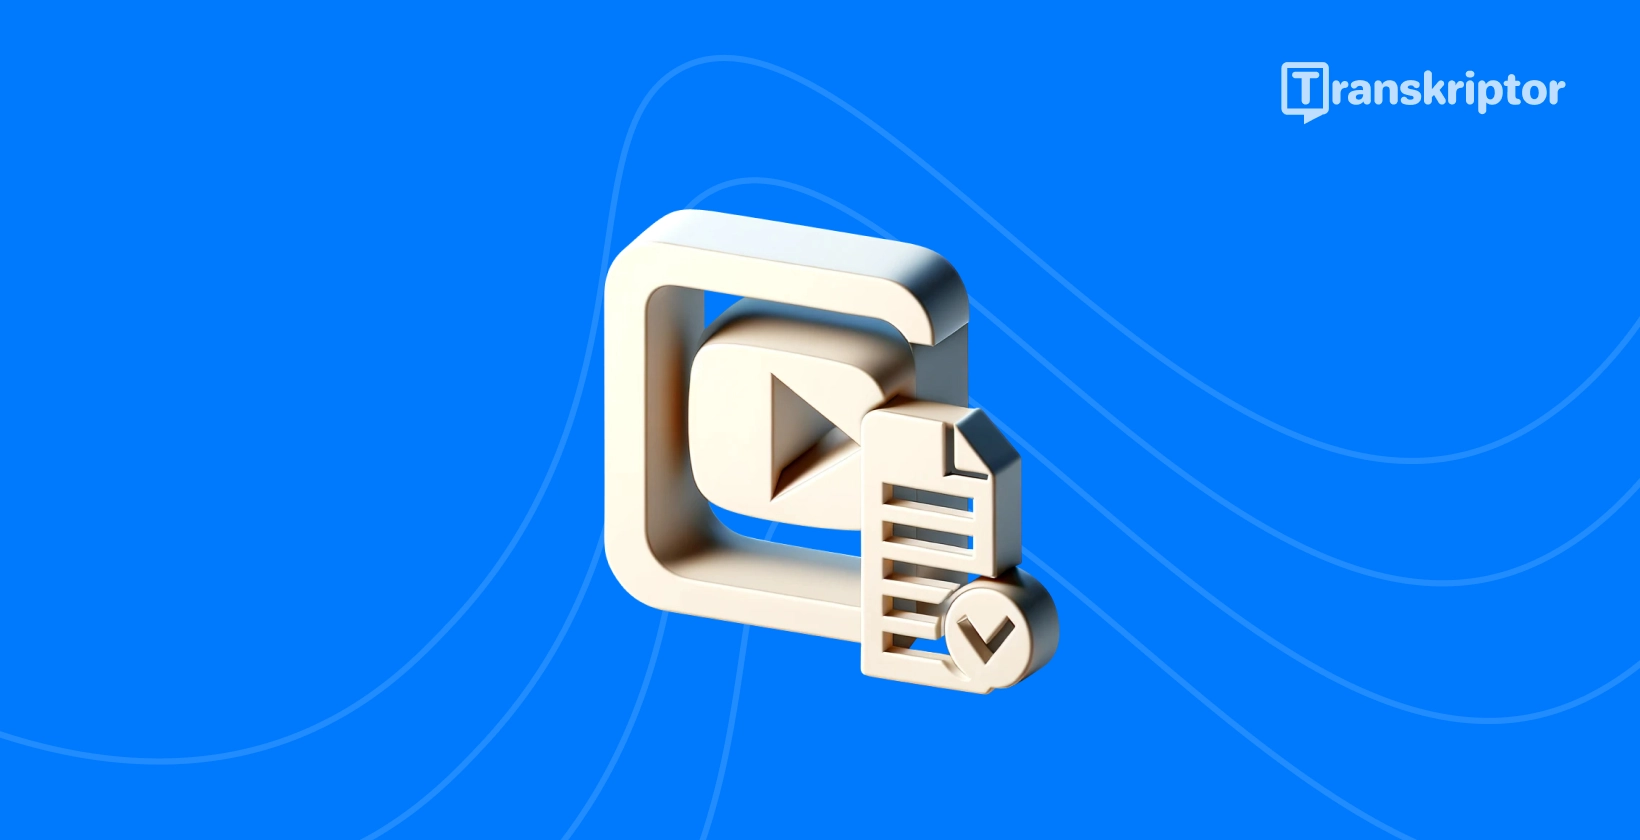 प्ले बटन और दस्तावेज़ के साथ ट्रांसक्रिप्शन सेवाएं आइकन पाठ YouTube वीडियो रूपांतरण का प्रतीक है।